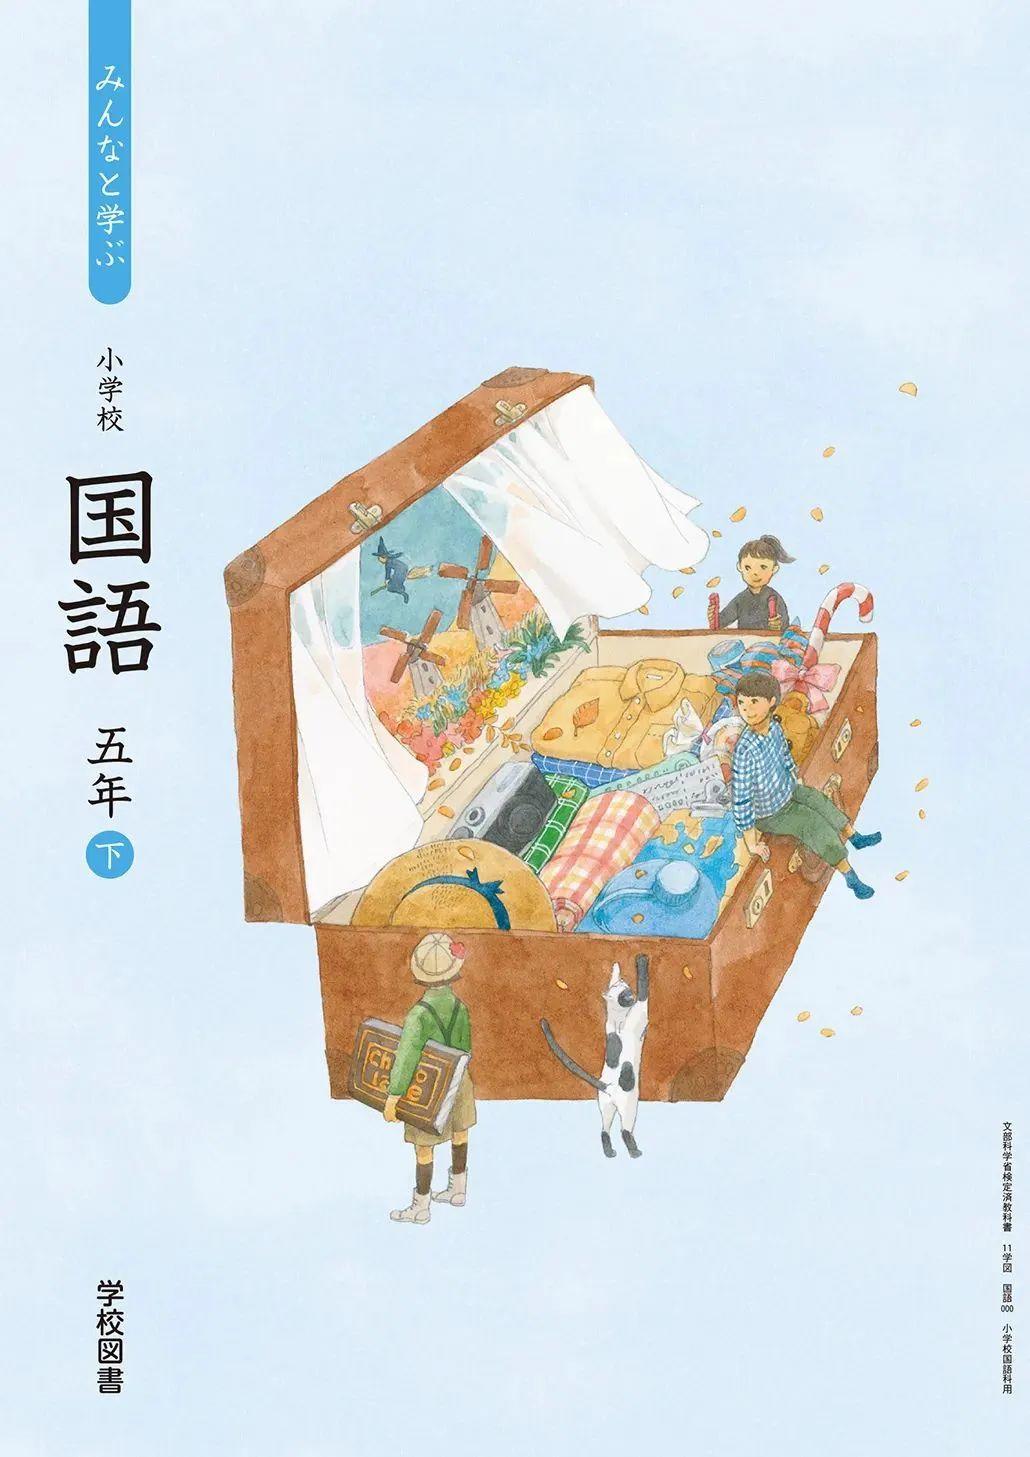 日本中小学生教科书封面设计,太美了吧! 第16张